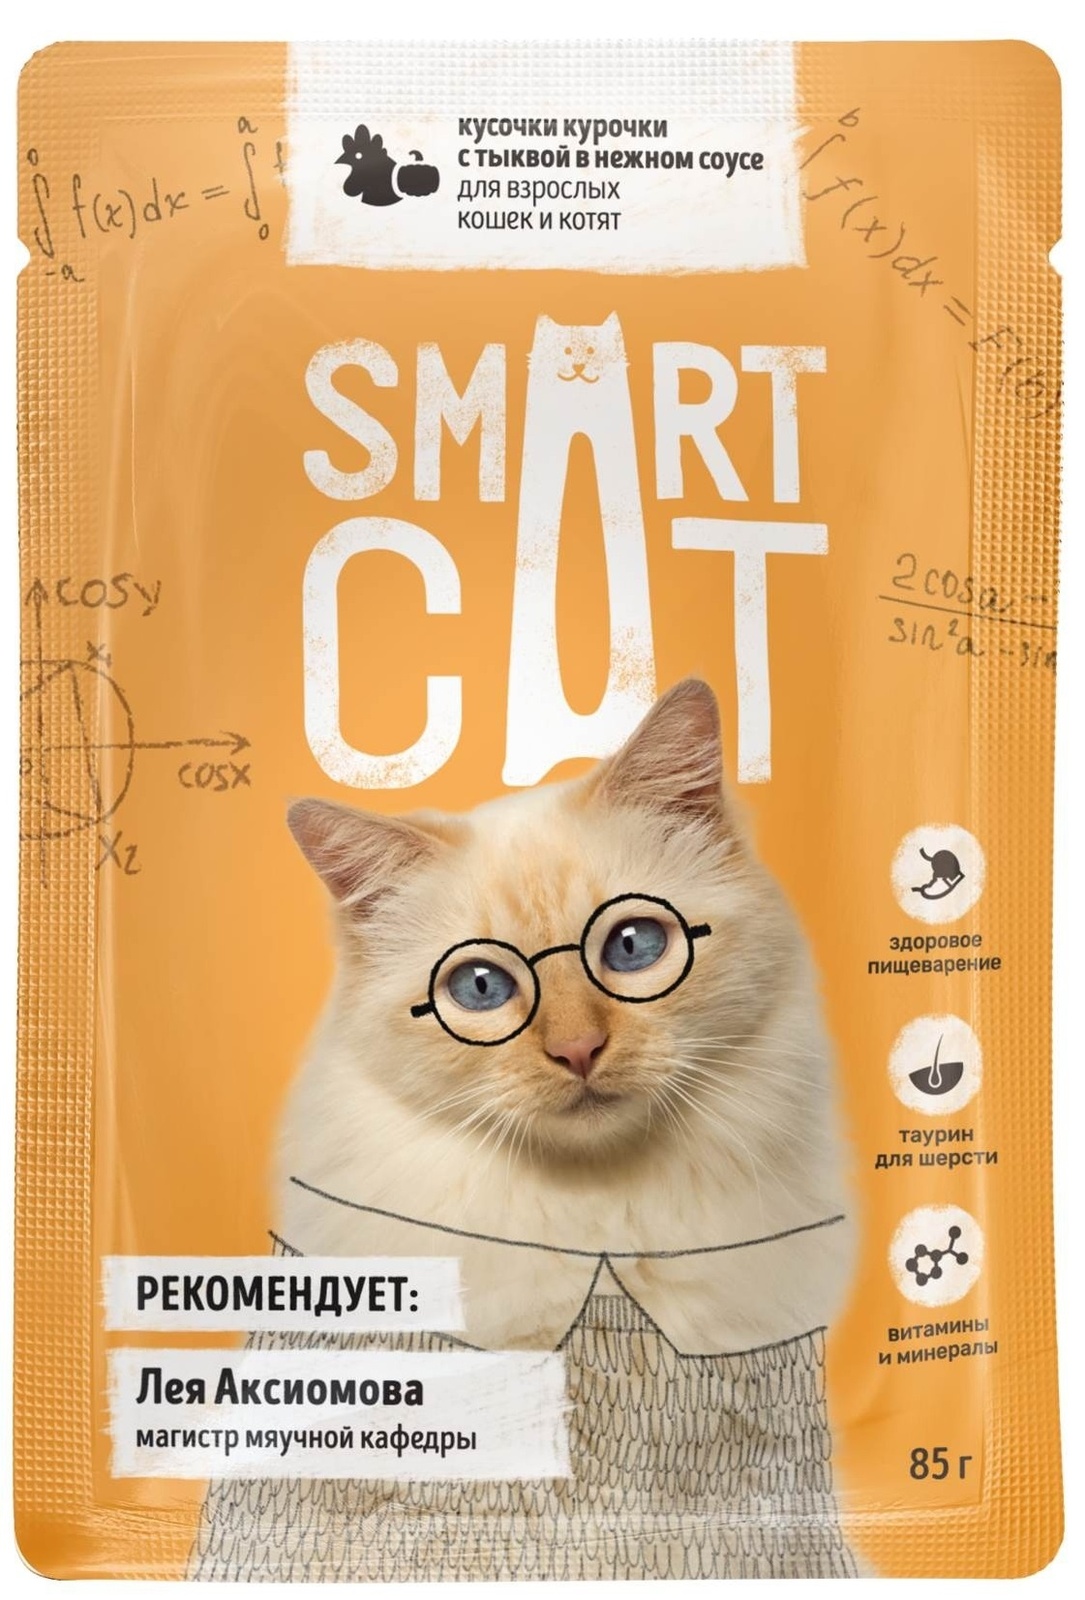 Smart Cat Smart Cat паучи для взрослых кошек и котят: кусочки курочки с тыквой в нежном соусе (85 г)